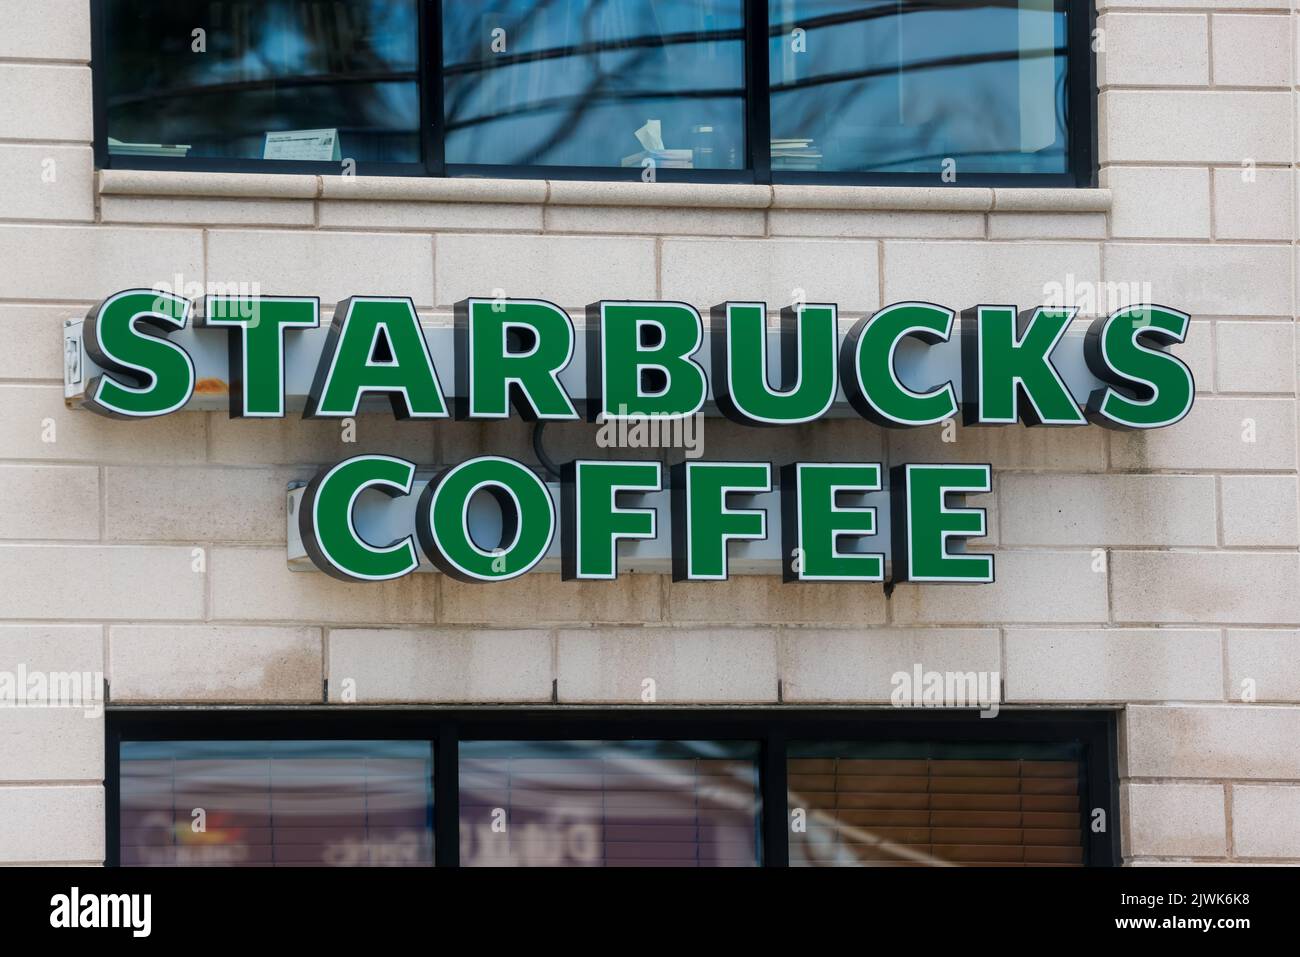 STARBUCKS-KAFFEE-Schild am Schaufenster. Starbucks Standorte servieren weltweit heiße und kalte Getränke aller Art. HALIFAX, NOVA SCOTIA, KANADA - AUGUST 2022 Stockfoto